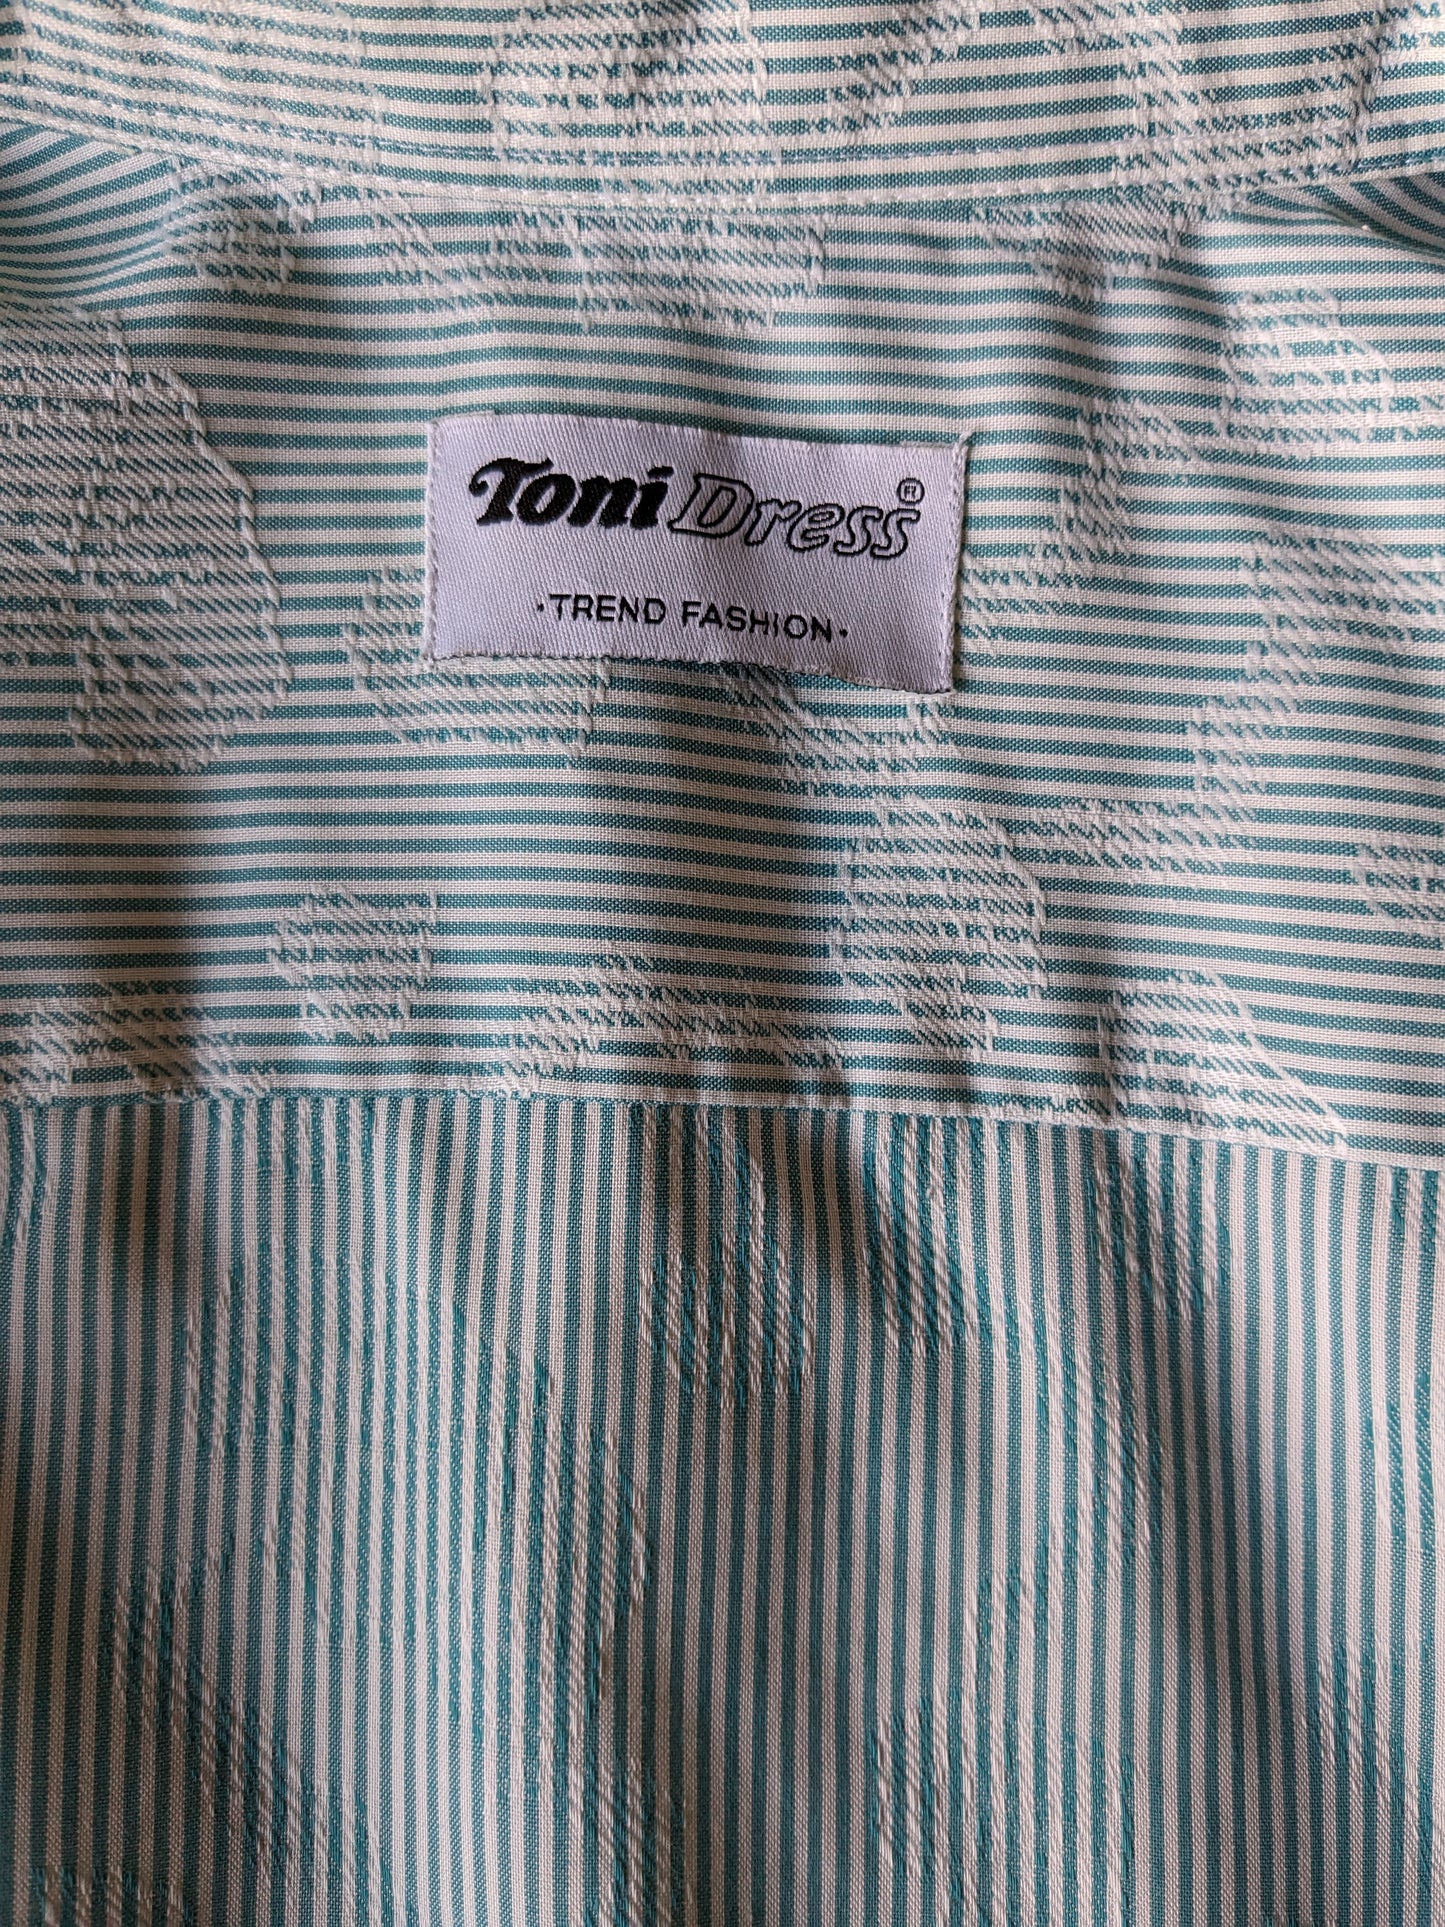 Vintage Toni Dress overhemd. Groen Wit gestreept met Wit bladmotief. Maat M .